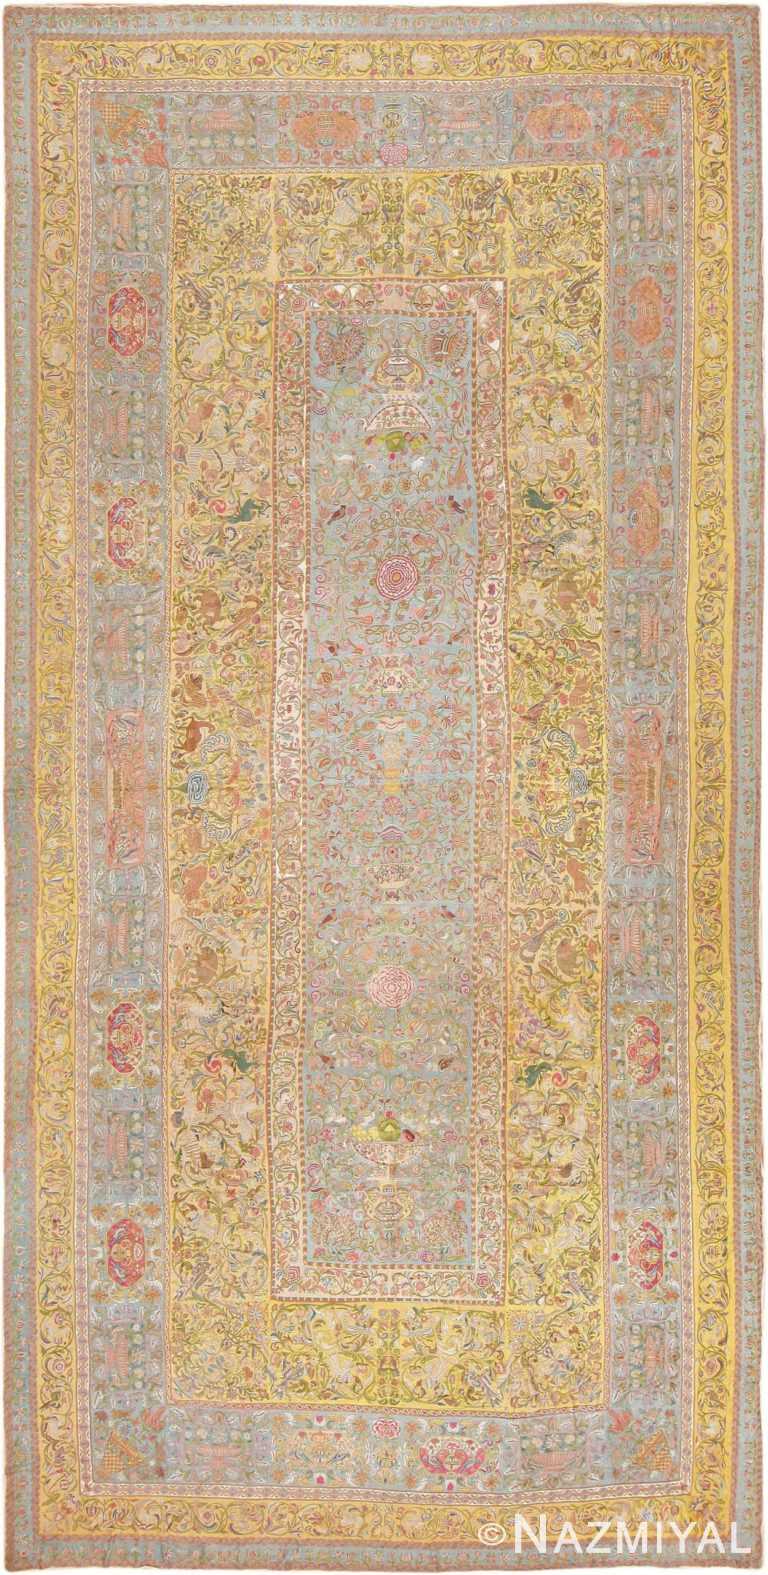 Late 17th Century Palace-Size Silk Indian Suzani Embroidery 46159 Nazmiyal